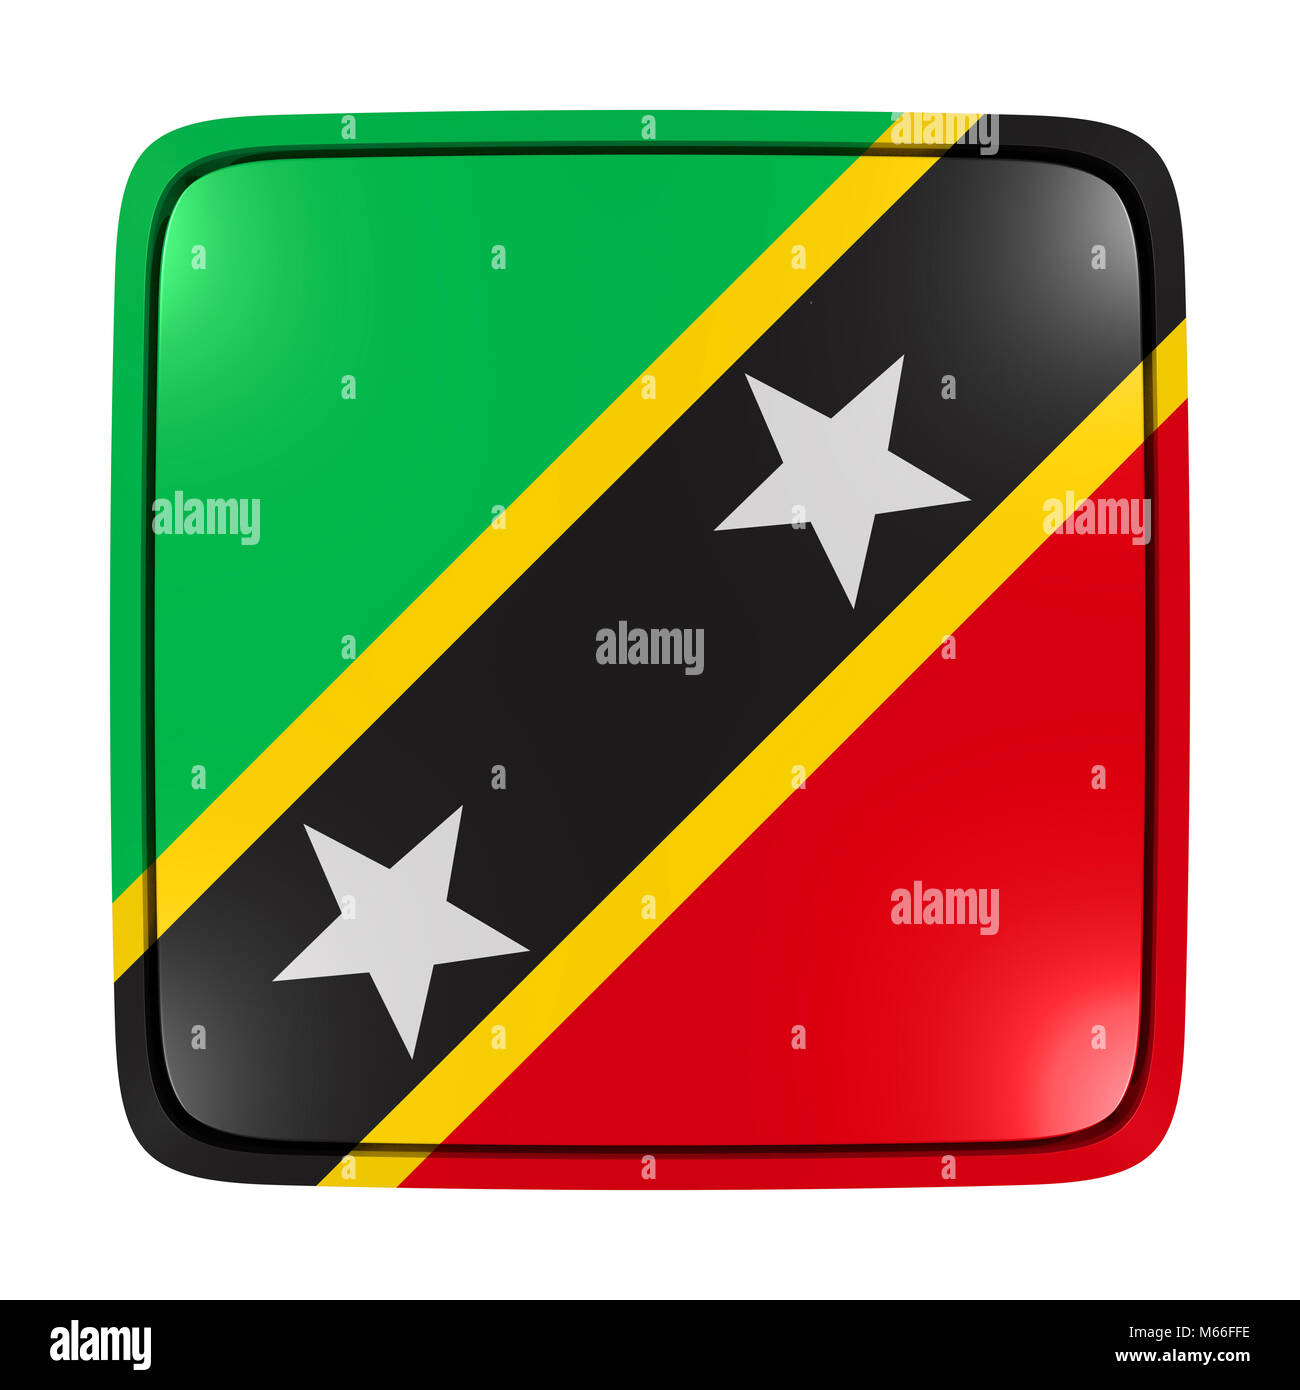 3D-Rendering für eine Saint Christopher und Nevis Flagge Symbol. Auf weissem Hintergrund. Stockfoto